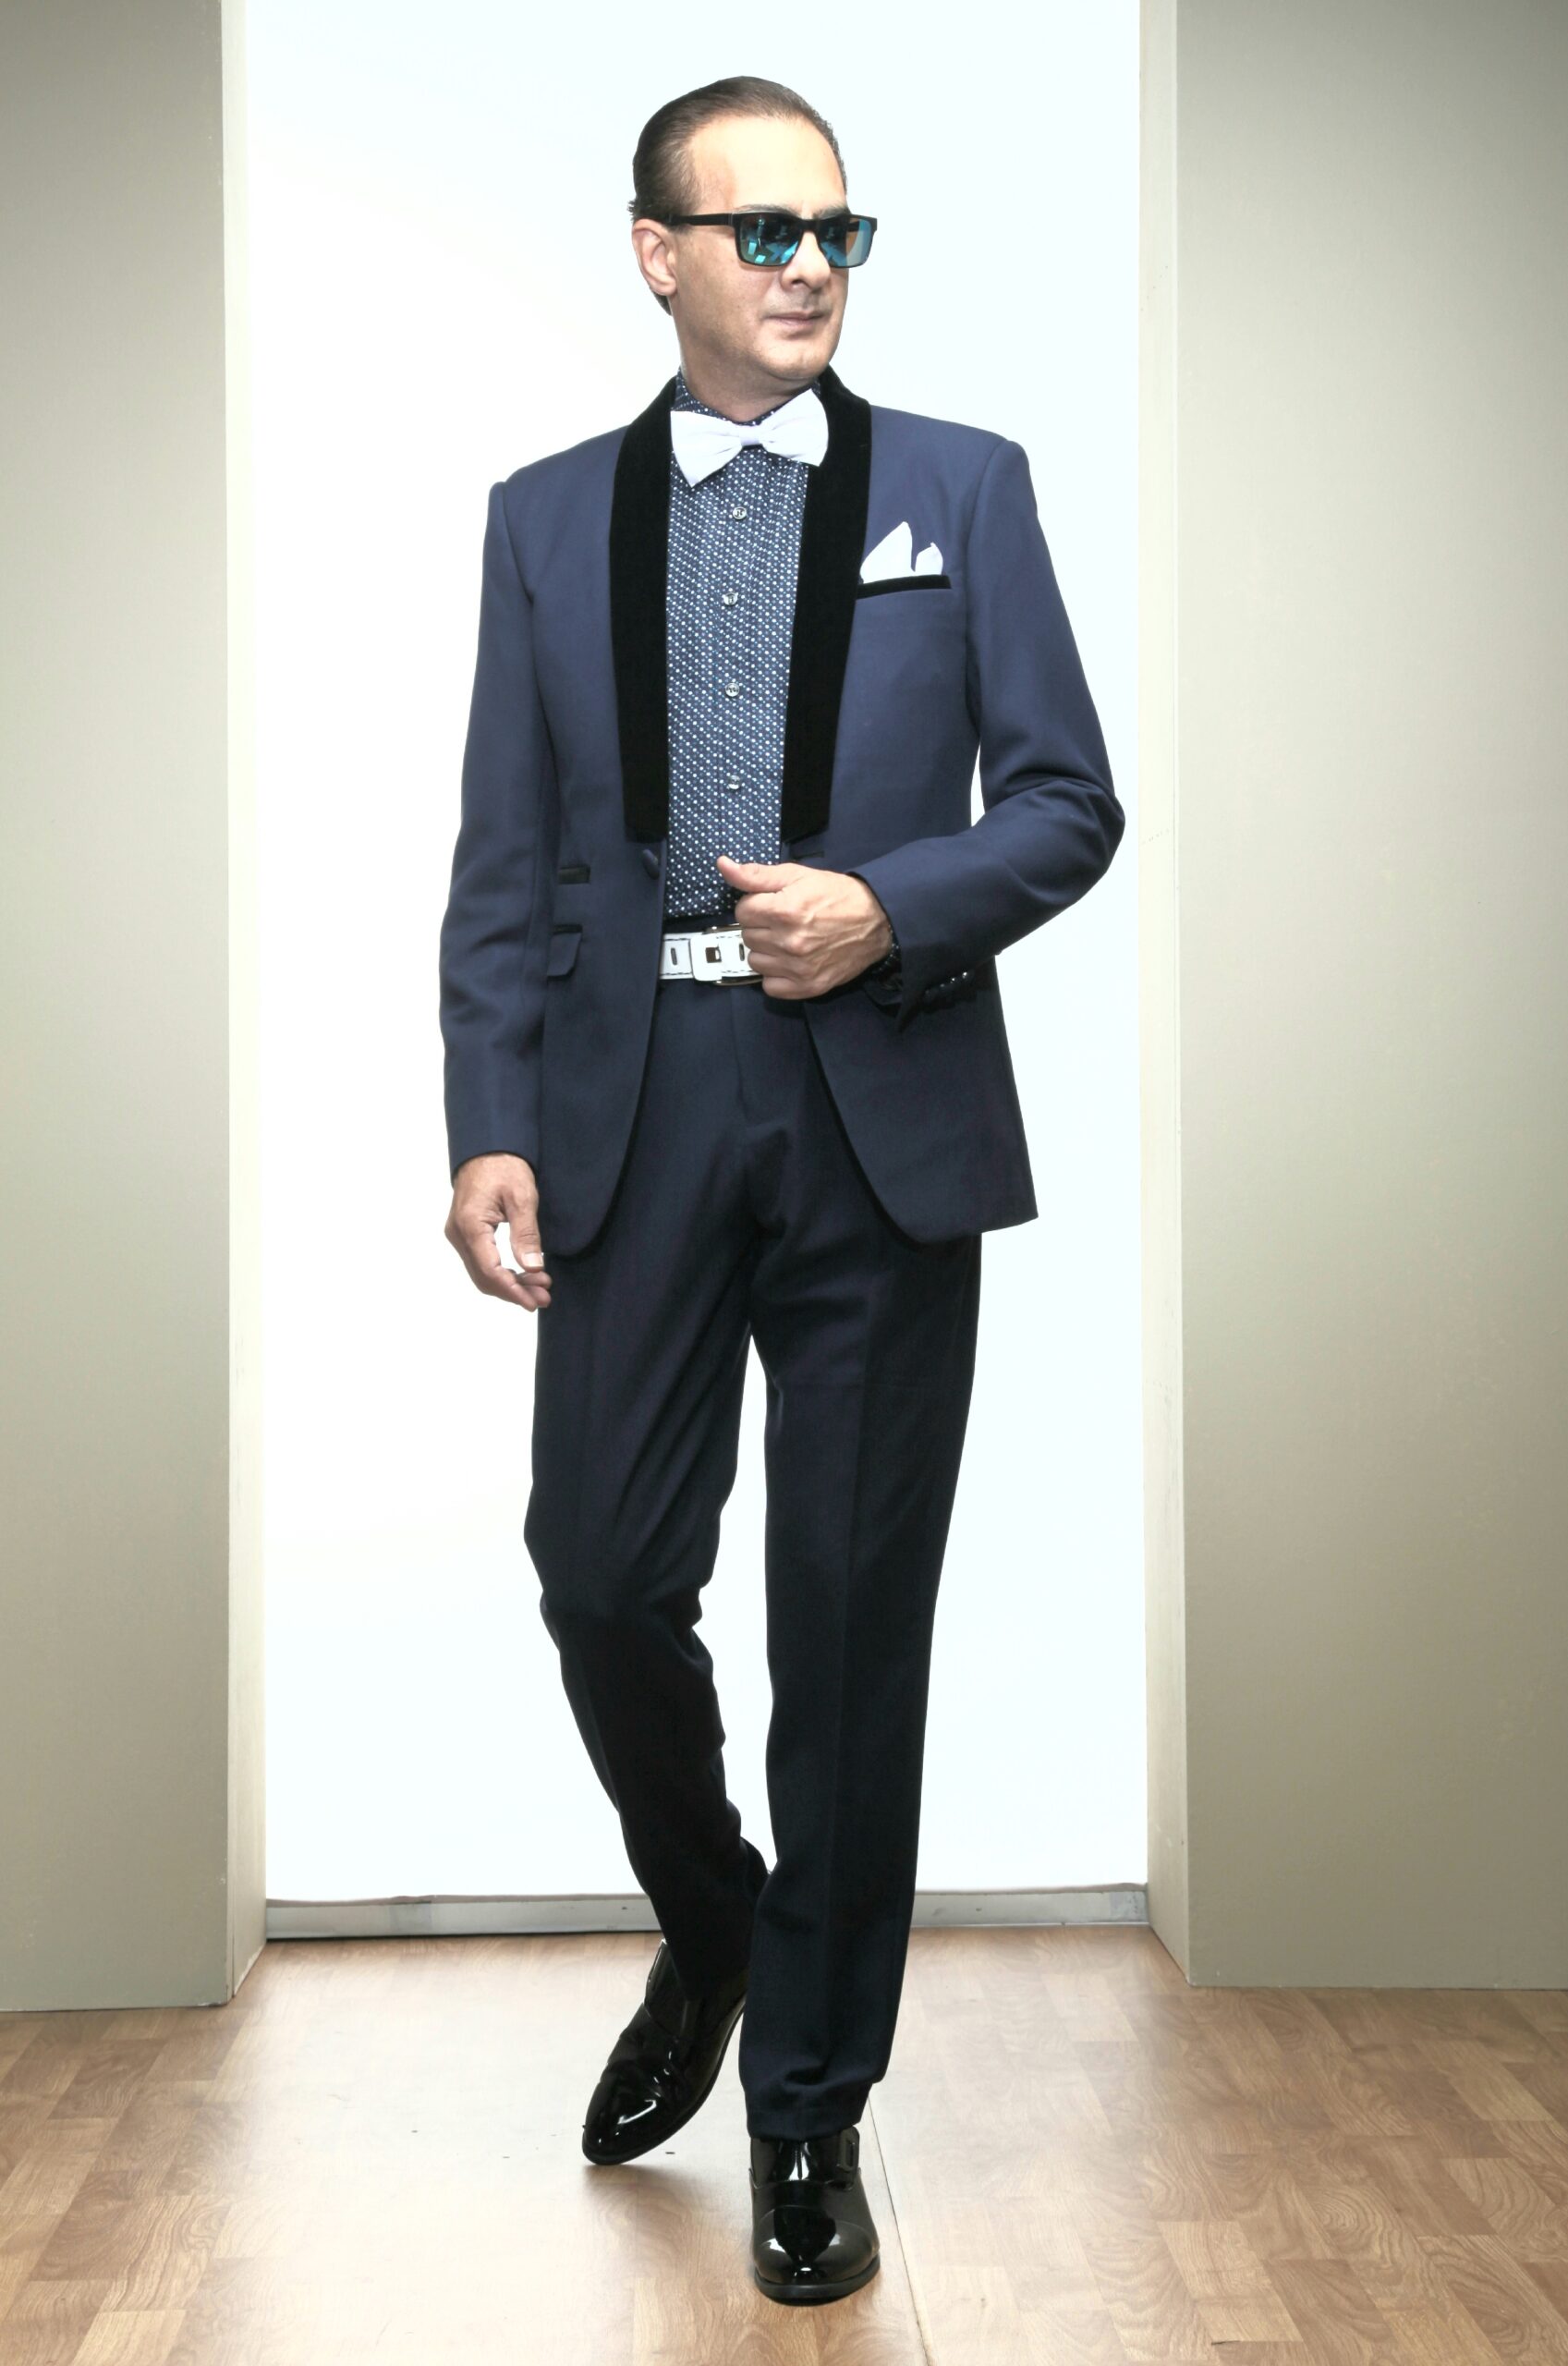 Mst 5001 01 Rent Rental Hire Tuxedo Suit Black Tie Suit Designer Suits Shop Tailor